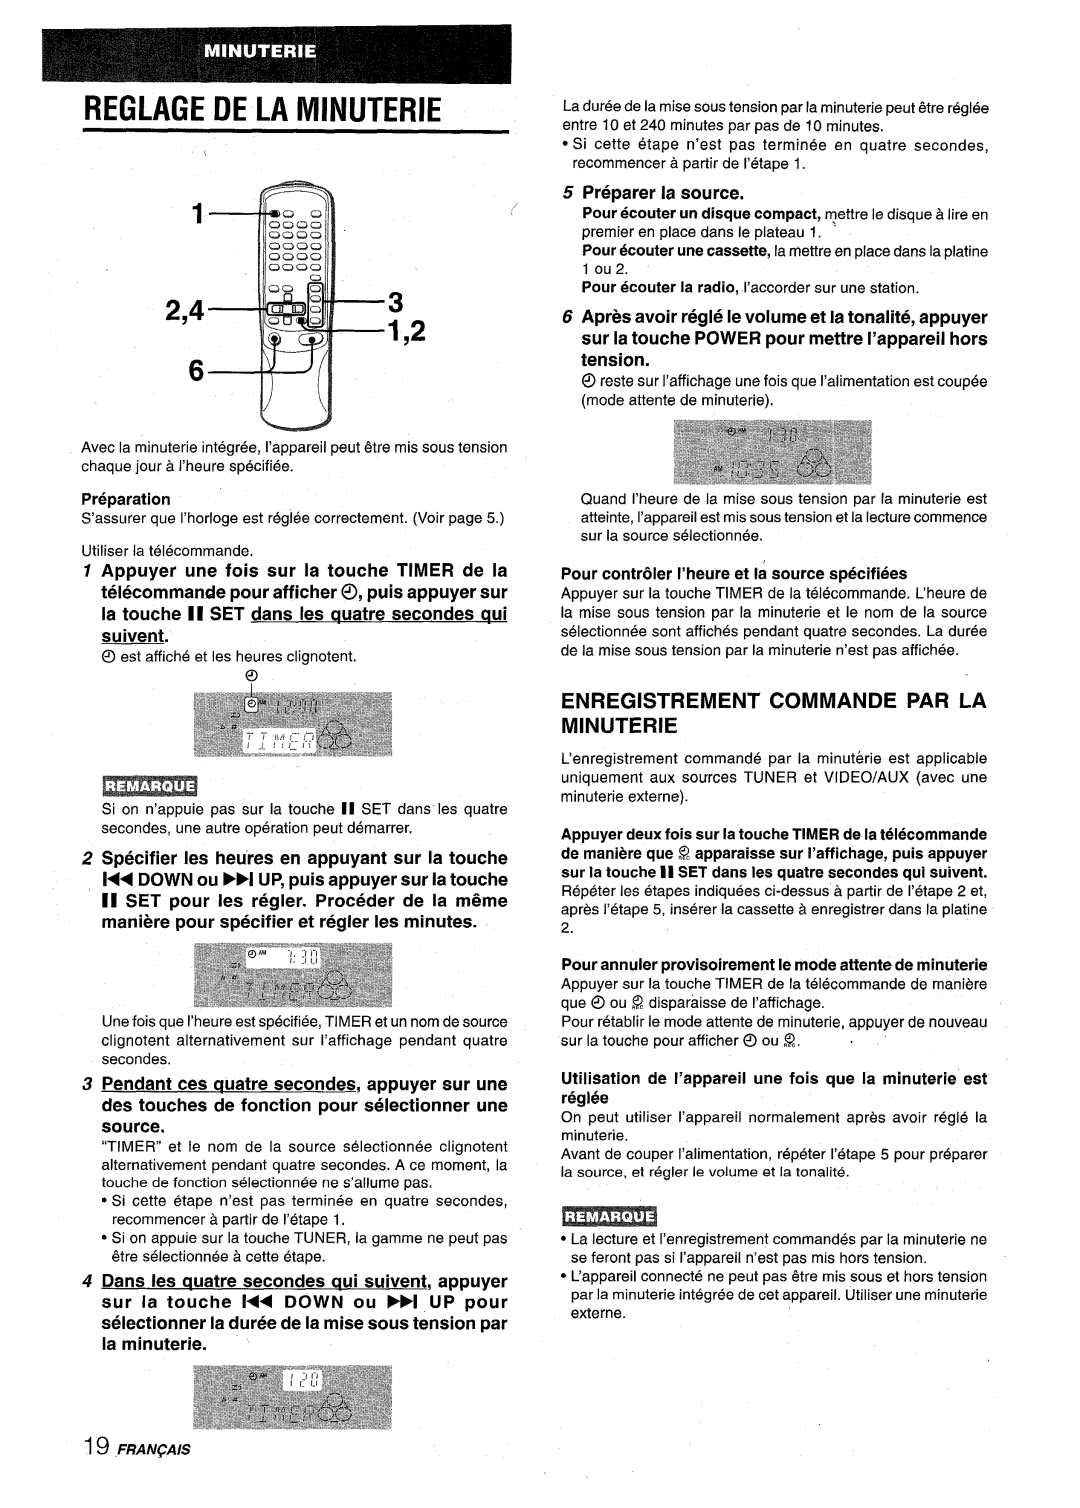 Aiwa NSX-V9000 manual Reglage De La Minuterie, Enregistrement Commande Par La Minuterie, Preparer la source, reglee 